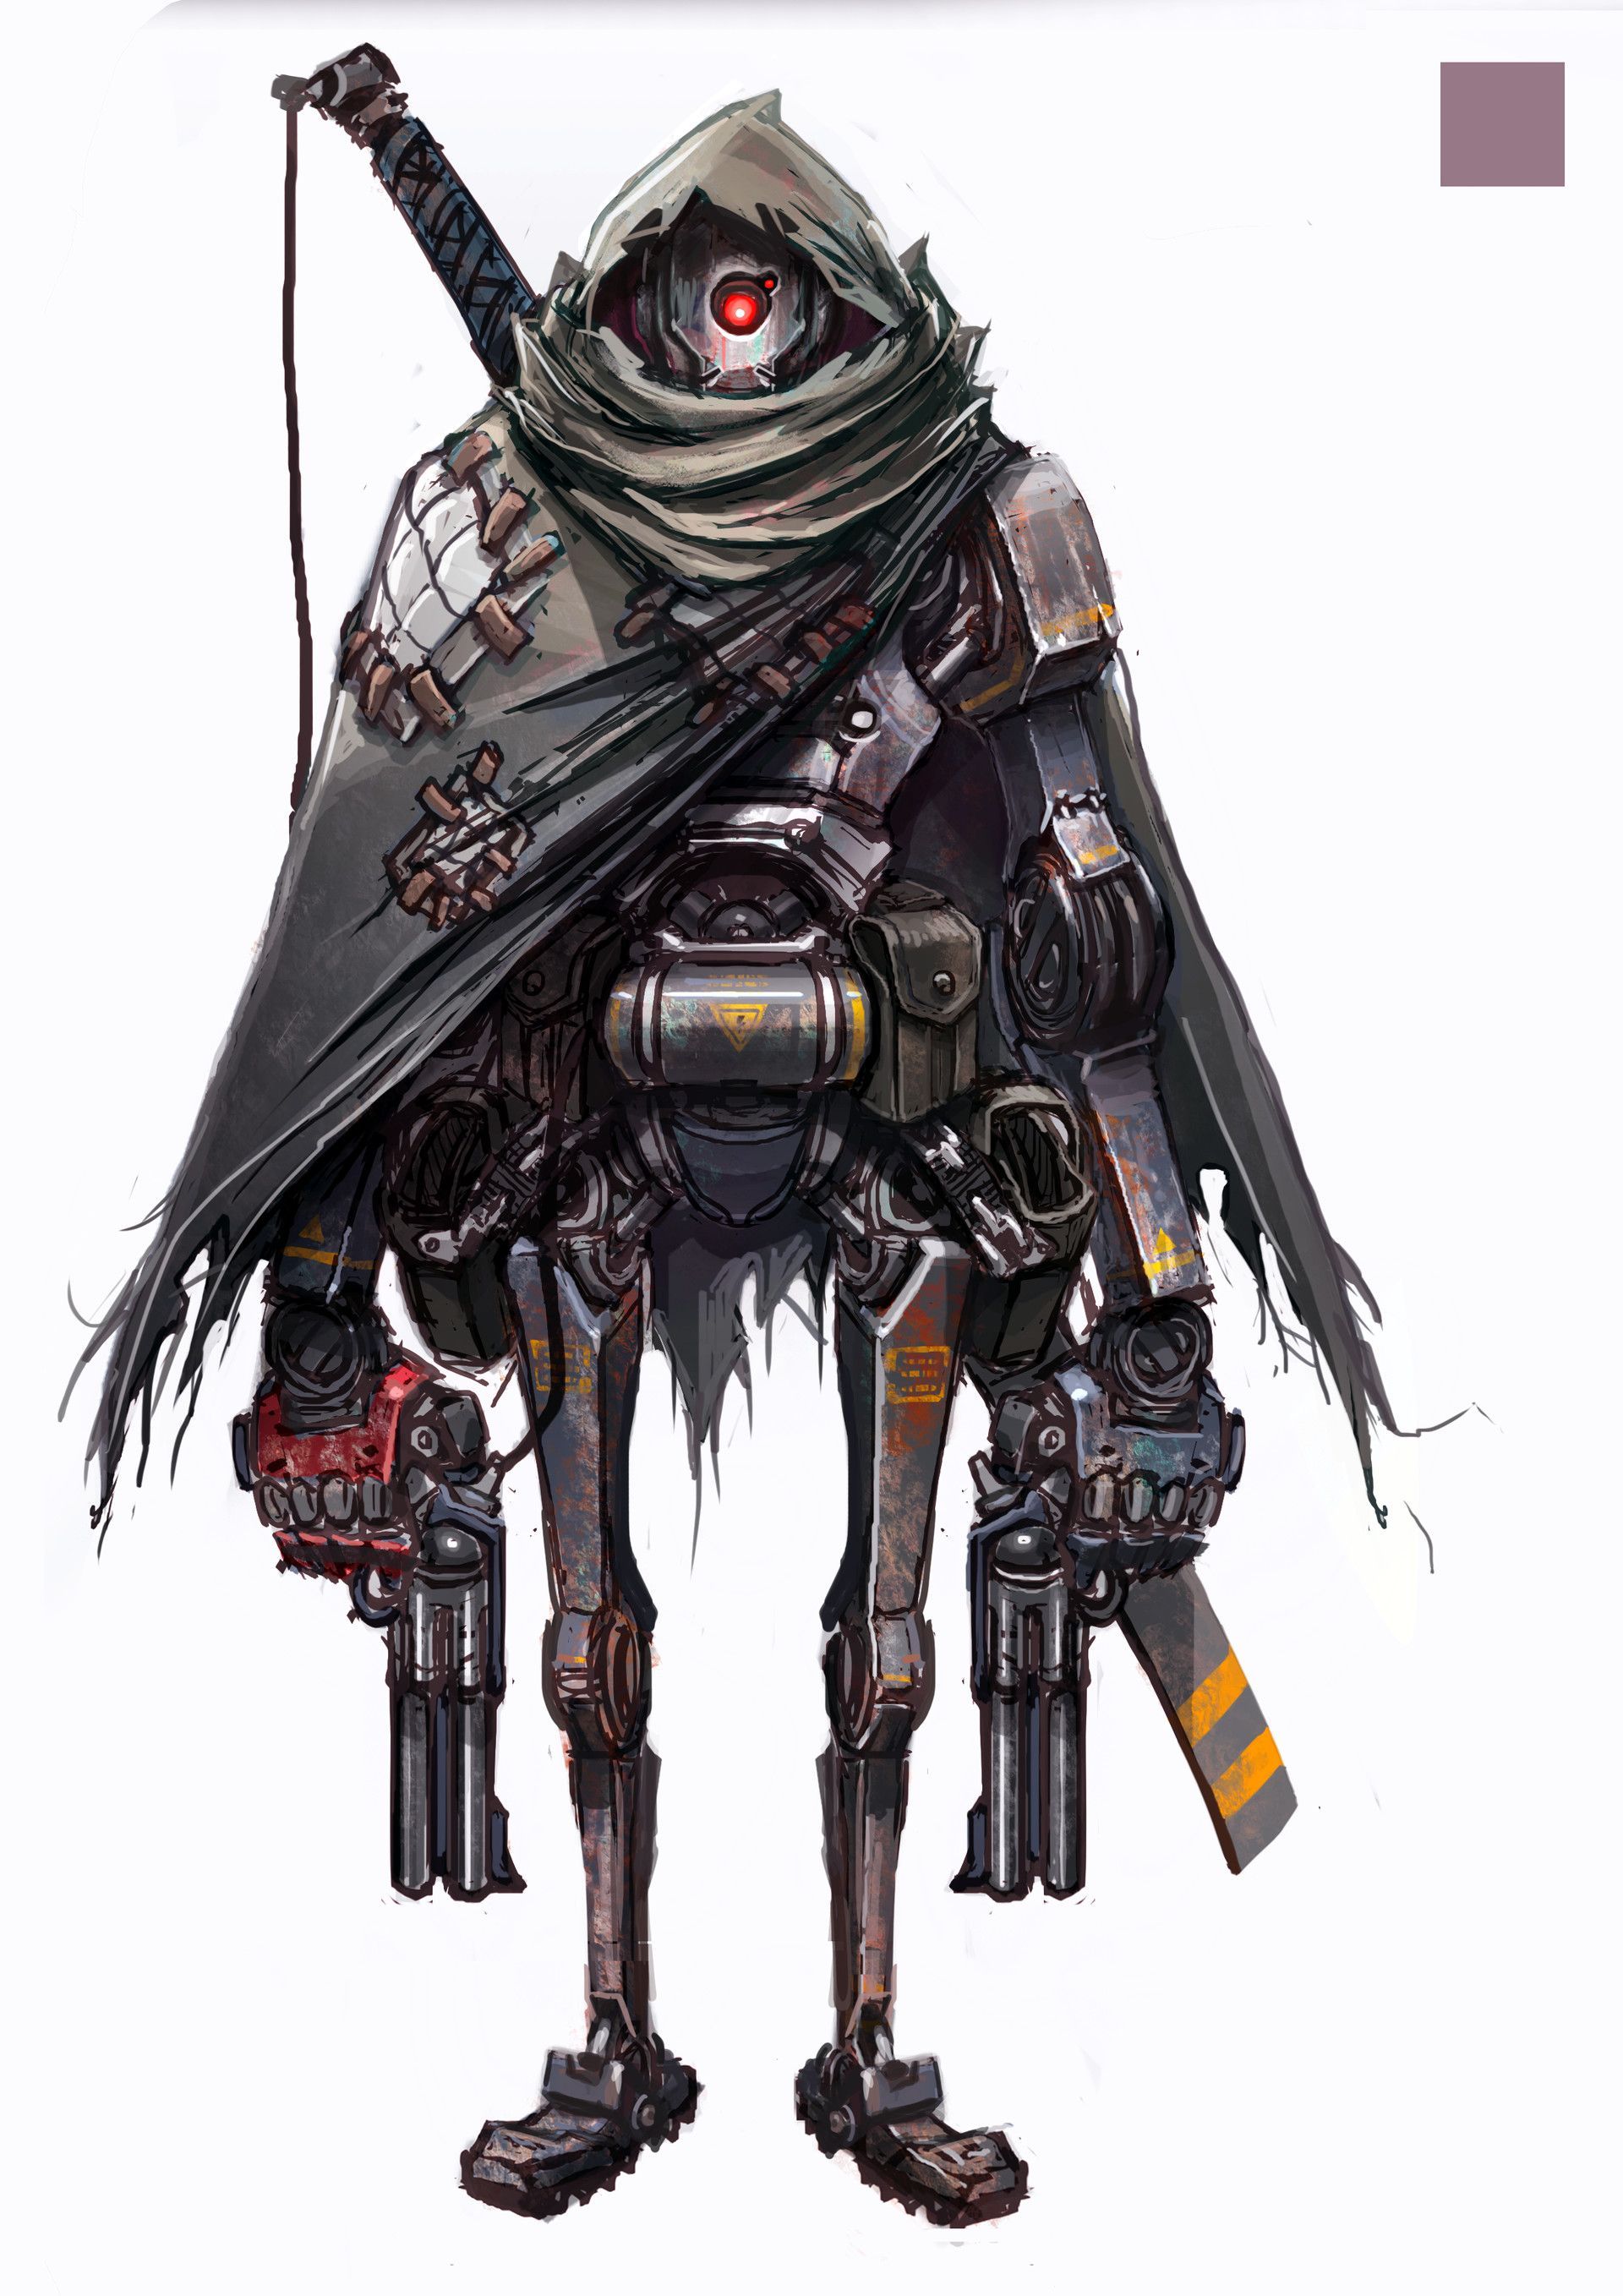 Gunpla. Robot concept art, Concept art characters, Cyberpunk character